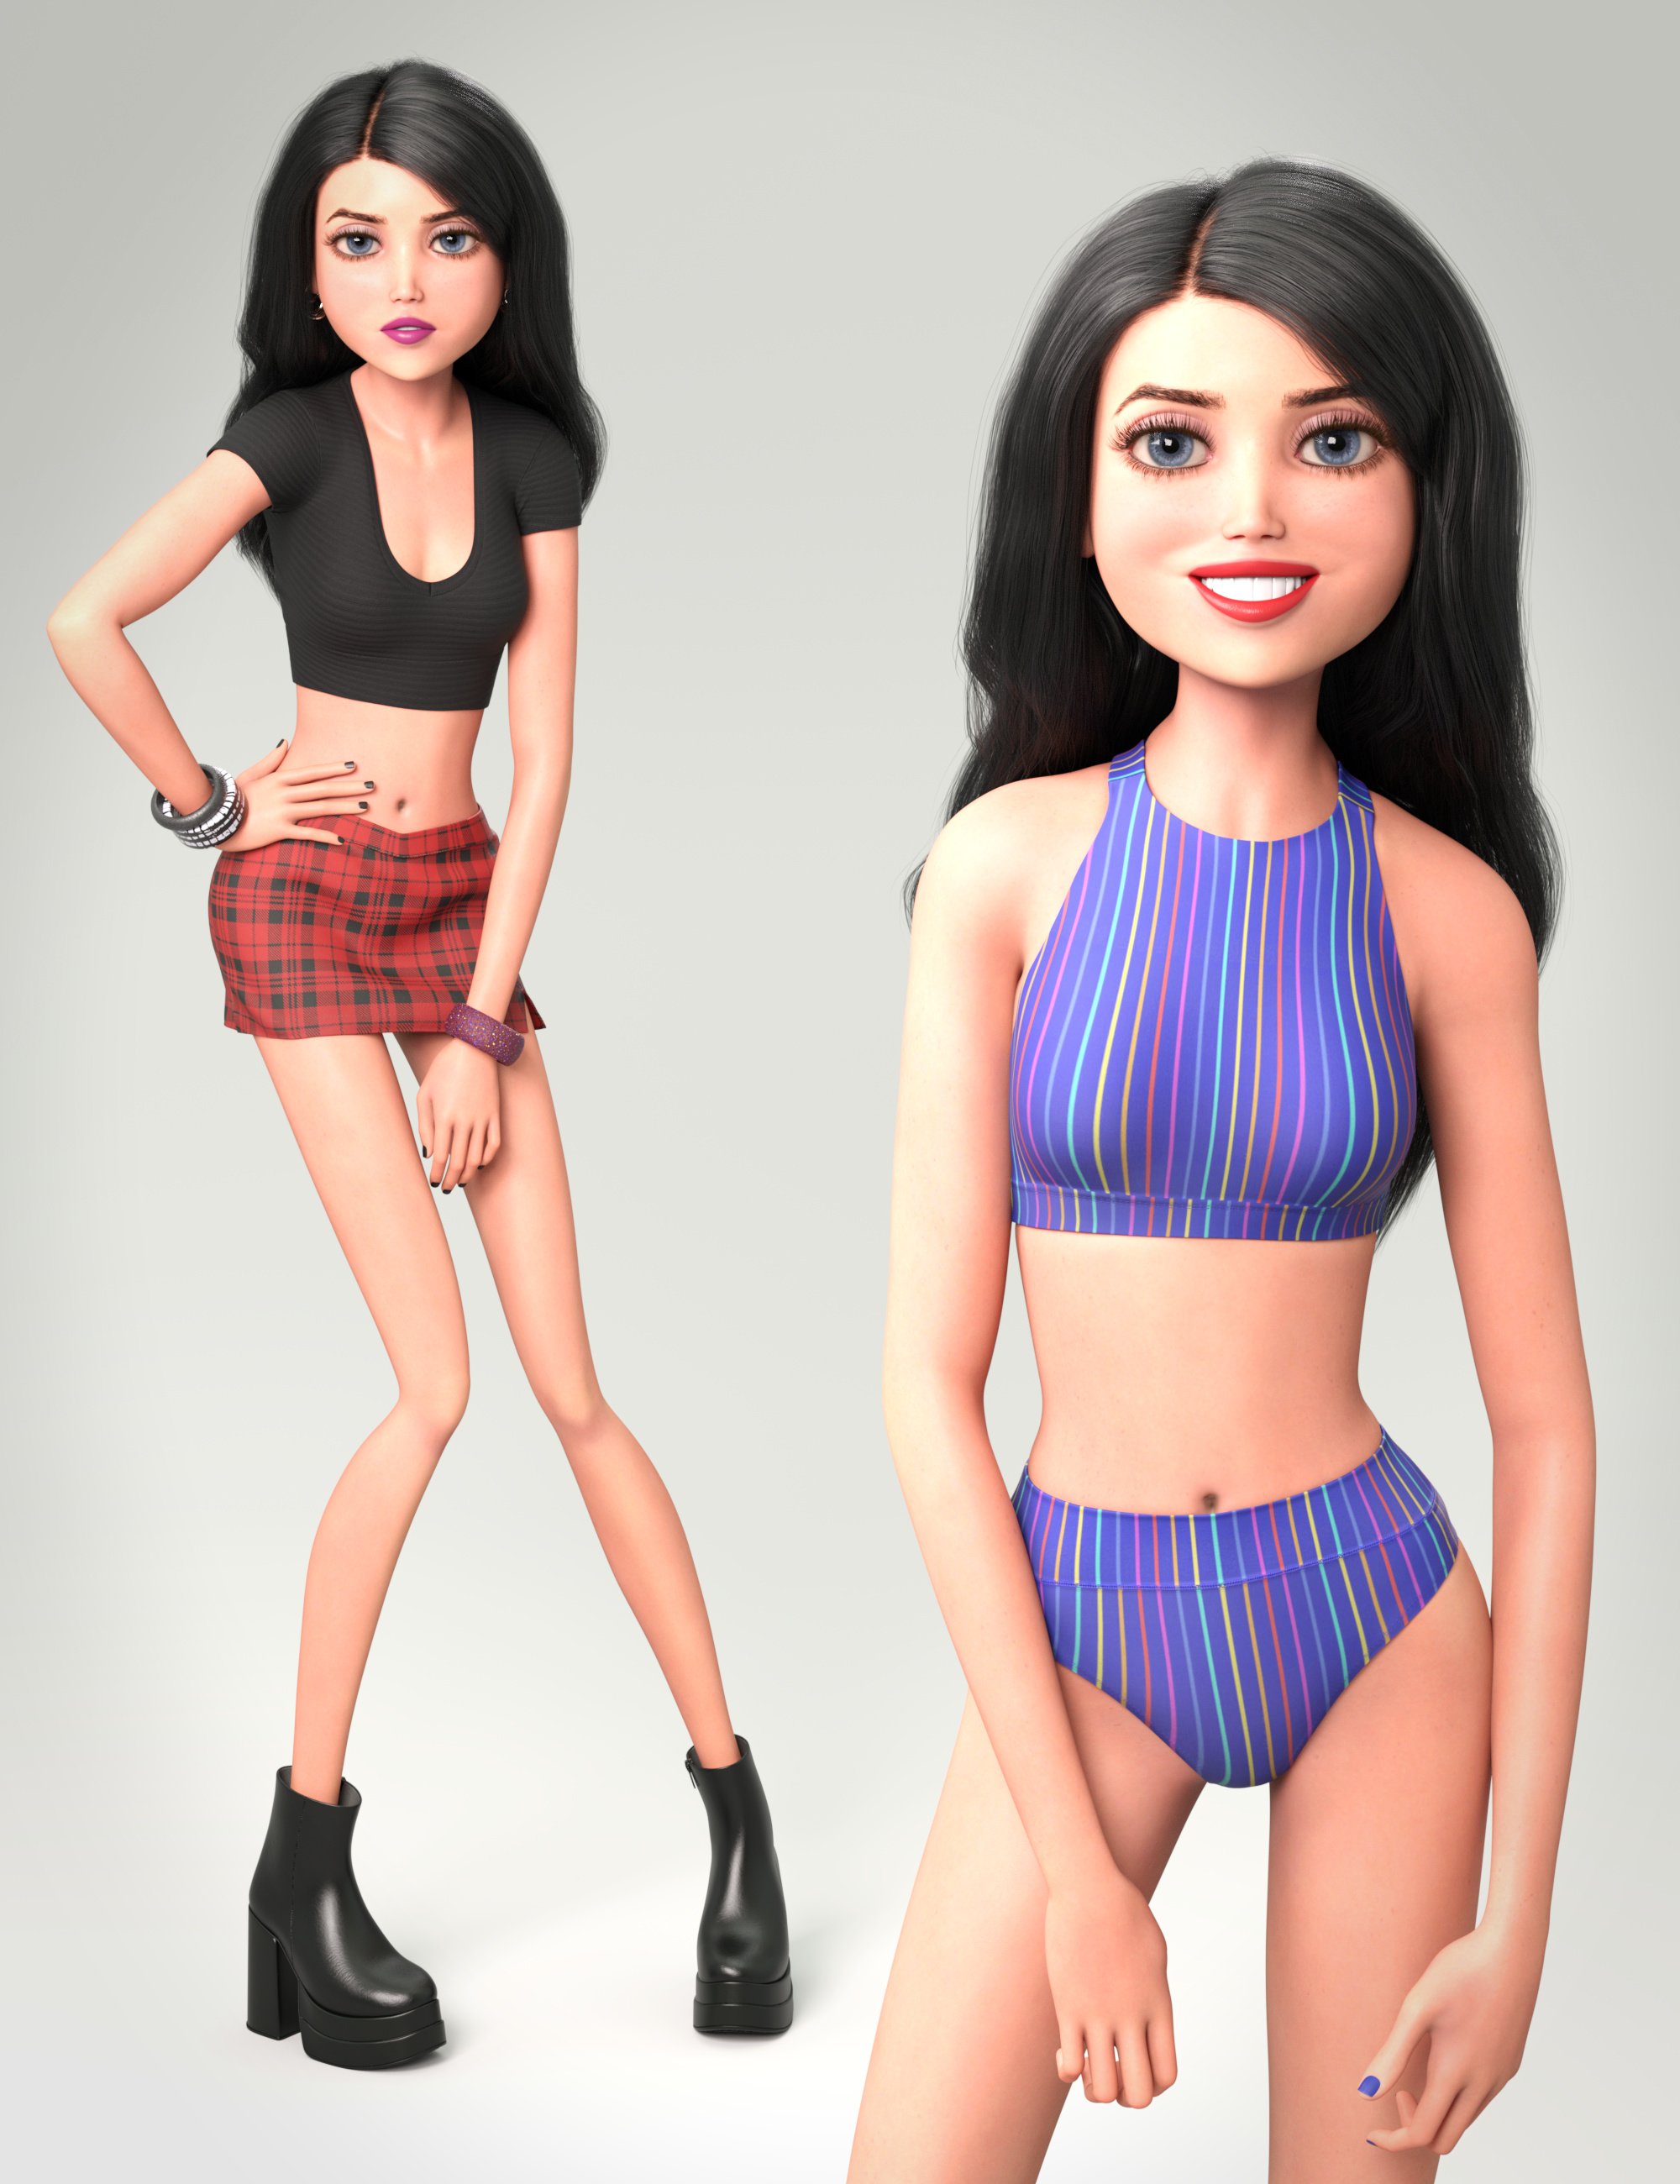 NG Stylized Skinny Girl Bundle by: NewGuy, 3D Models by Daz 3D